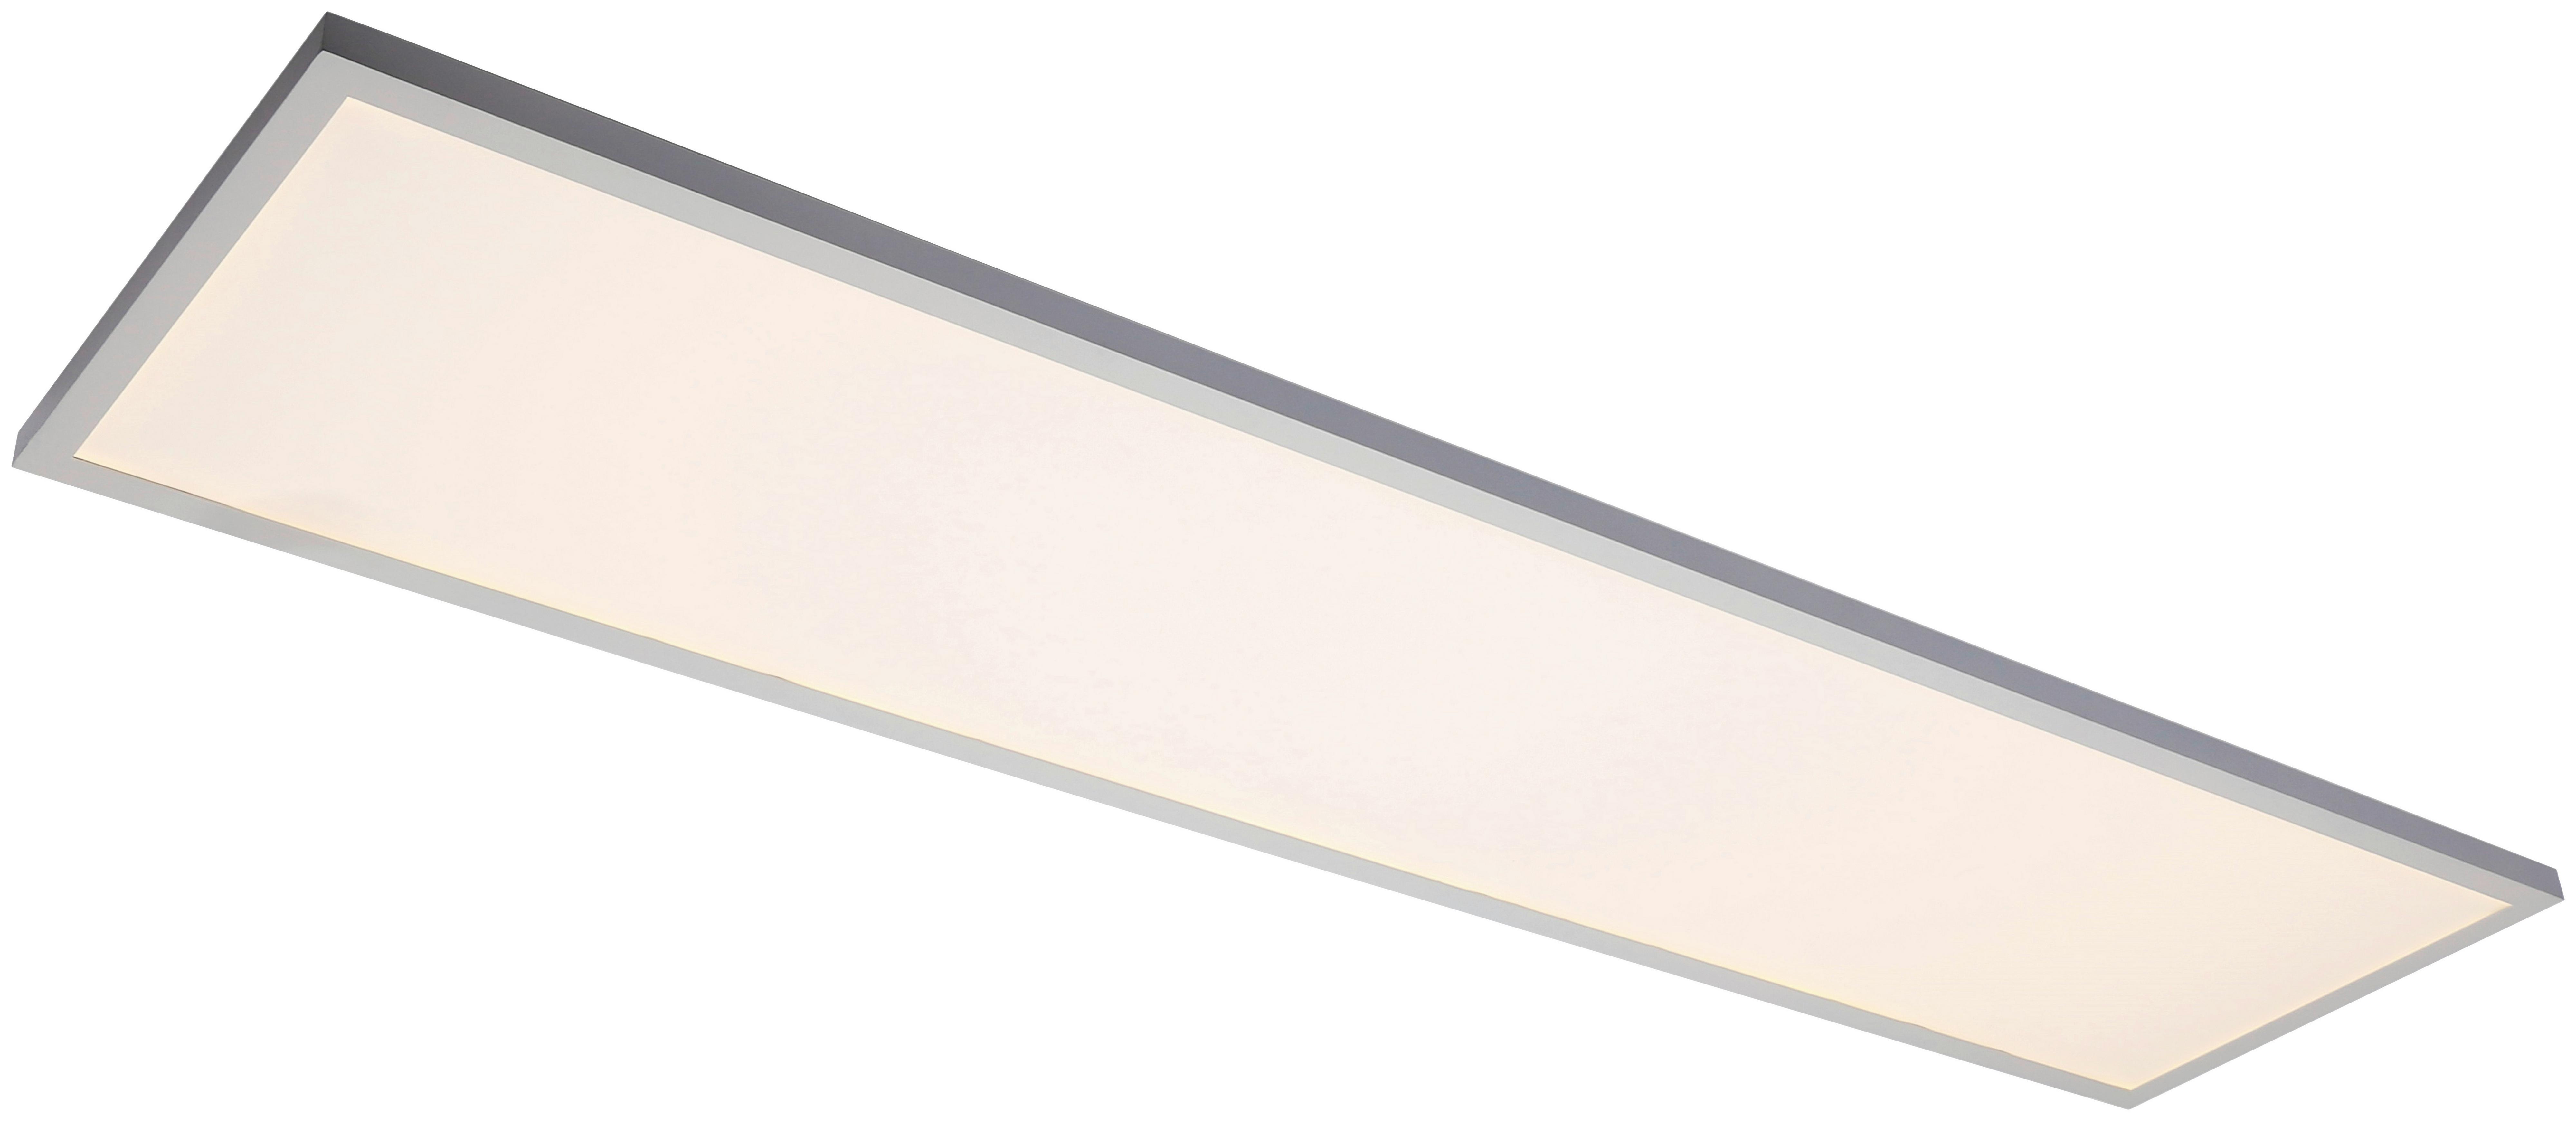 LED-Deckenleuchte Cornelius max. 40 Watt - Weiß, MODERN, Kunststoff (120/30/7,5cm) - Premium Living